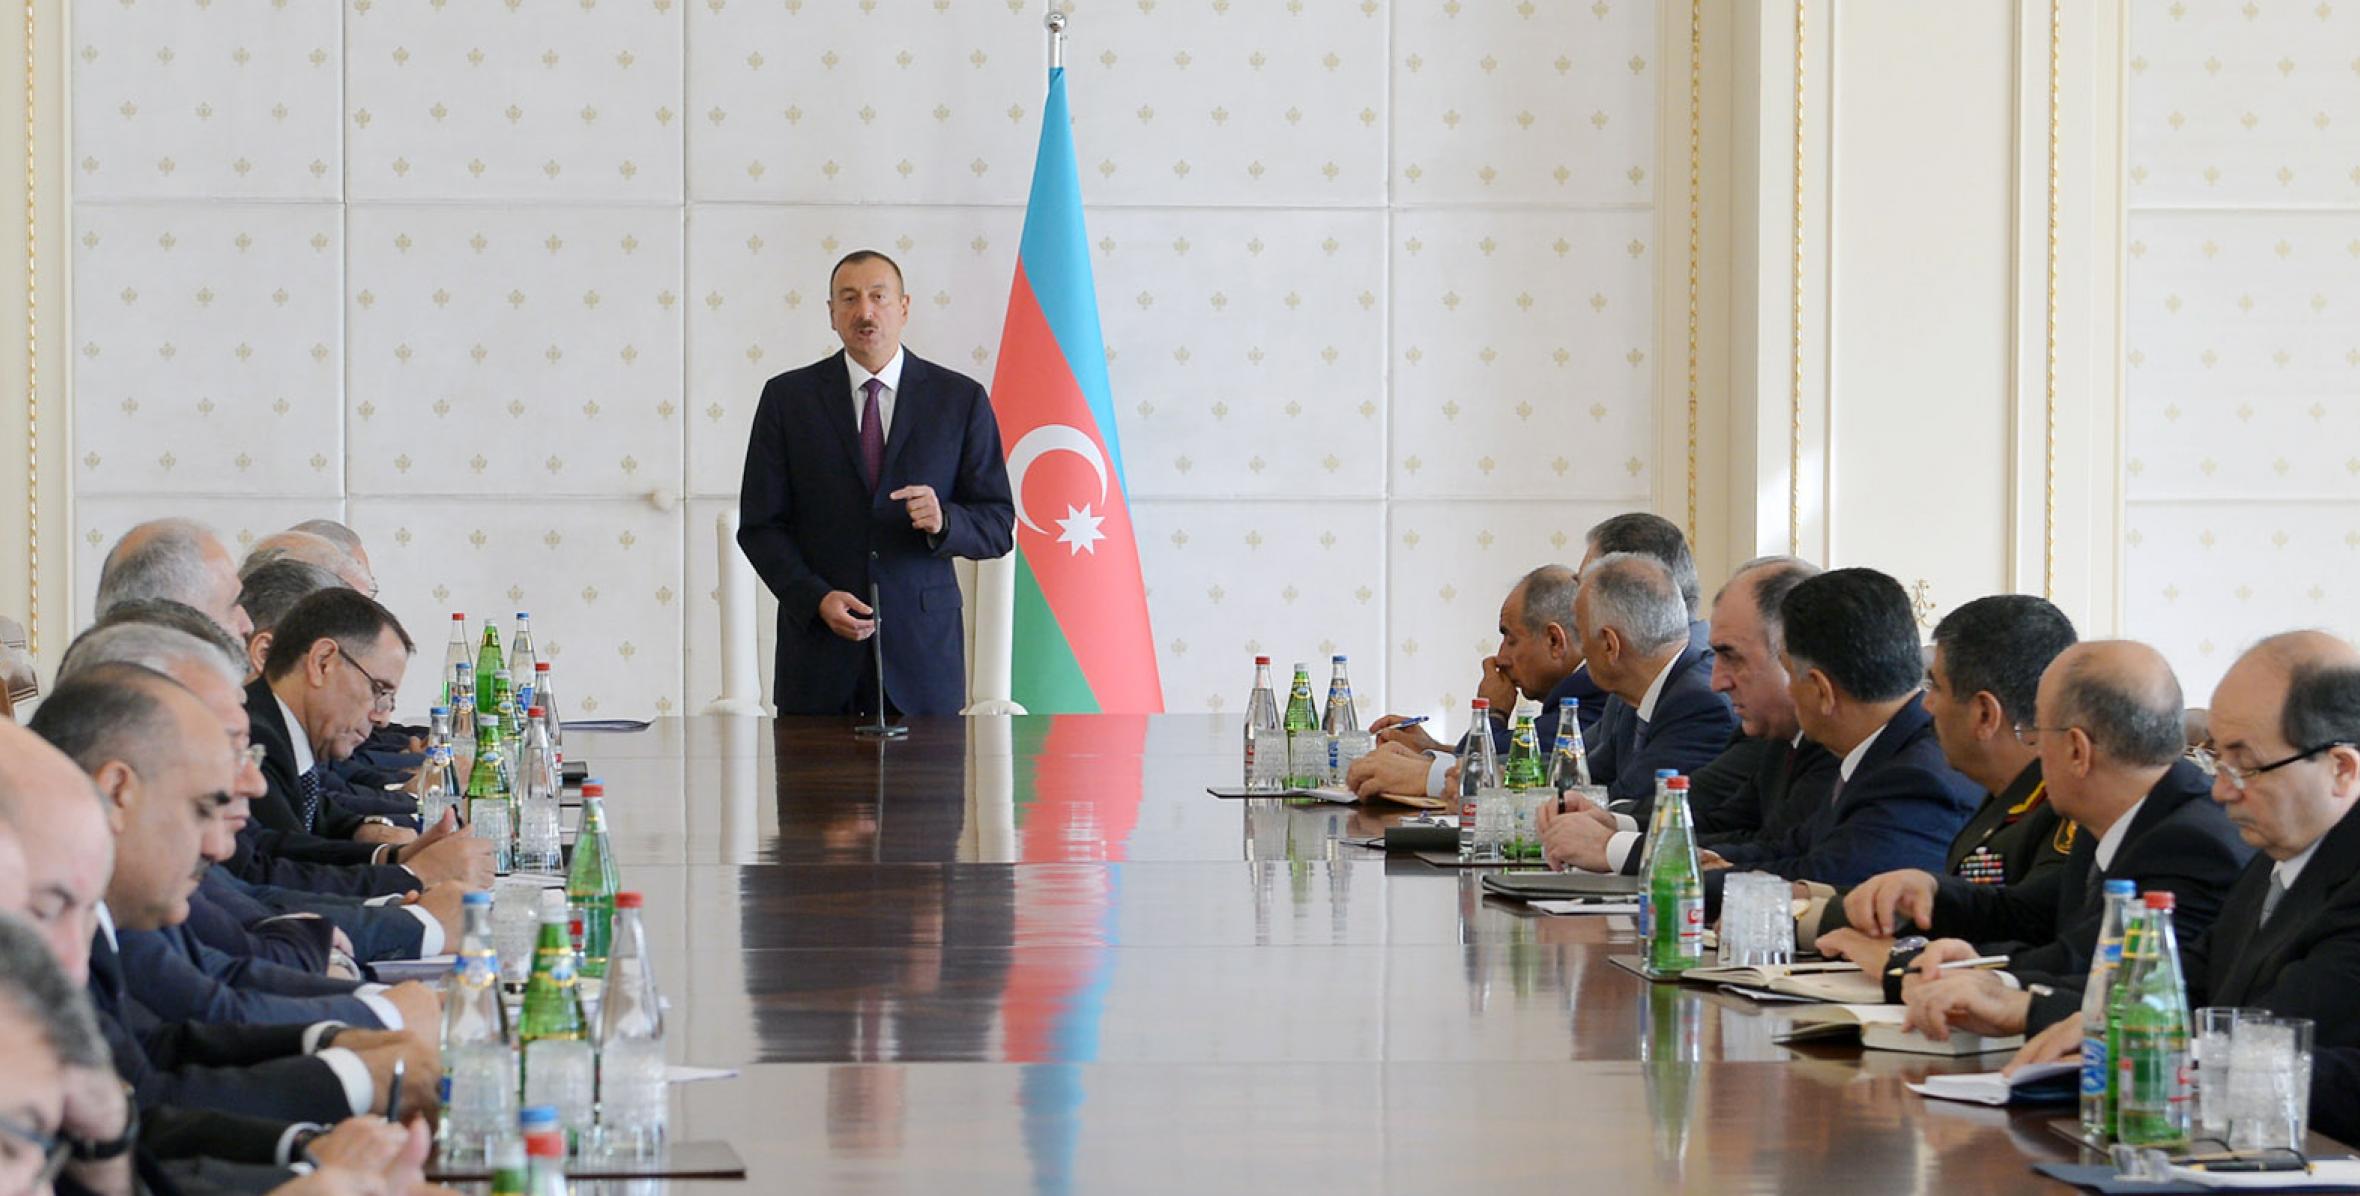 Вступительная речь Ильхама Алиева на заседании Кабинета Министров, посвященном итогам социально-экономического развития в первой половине 2014 года и предстоящим задачам